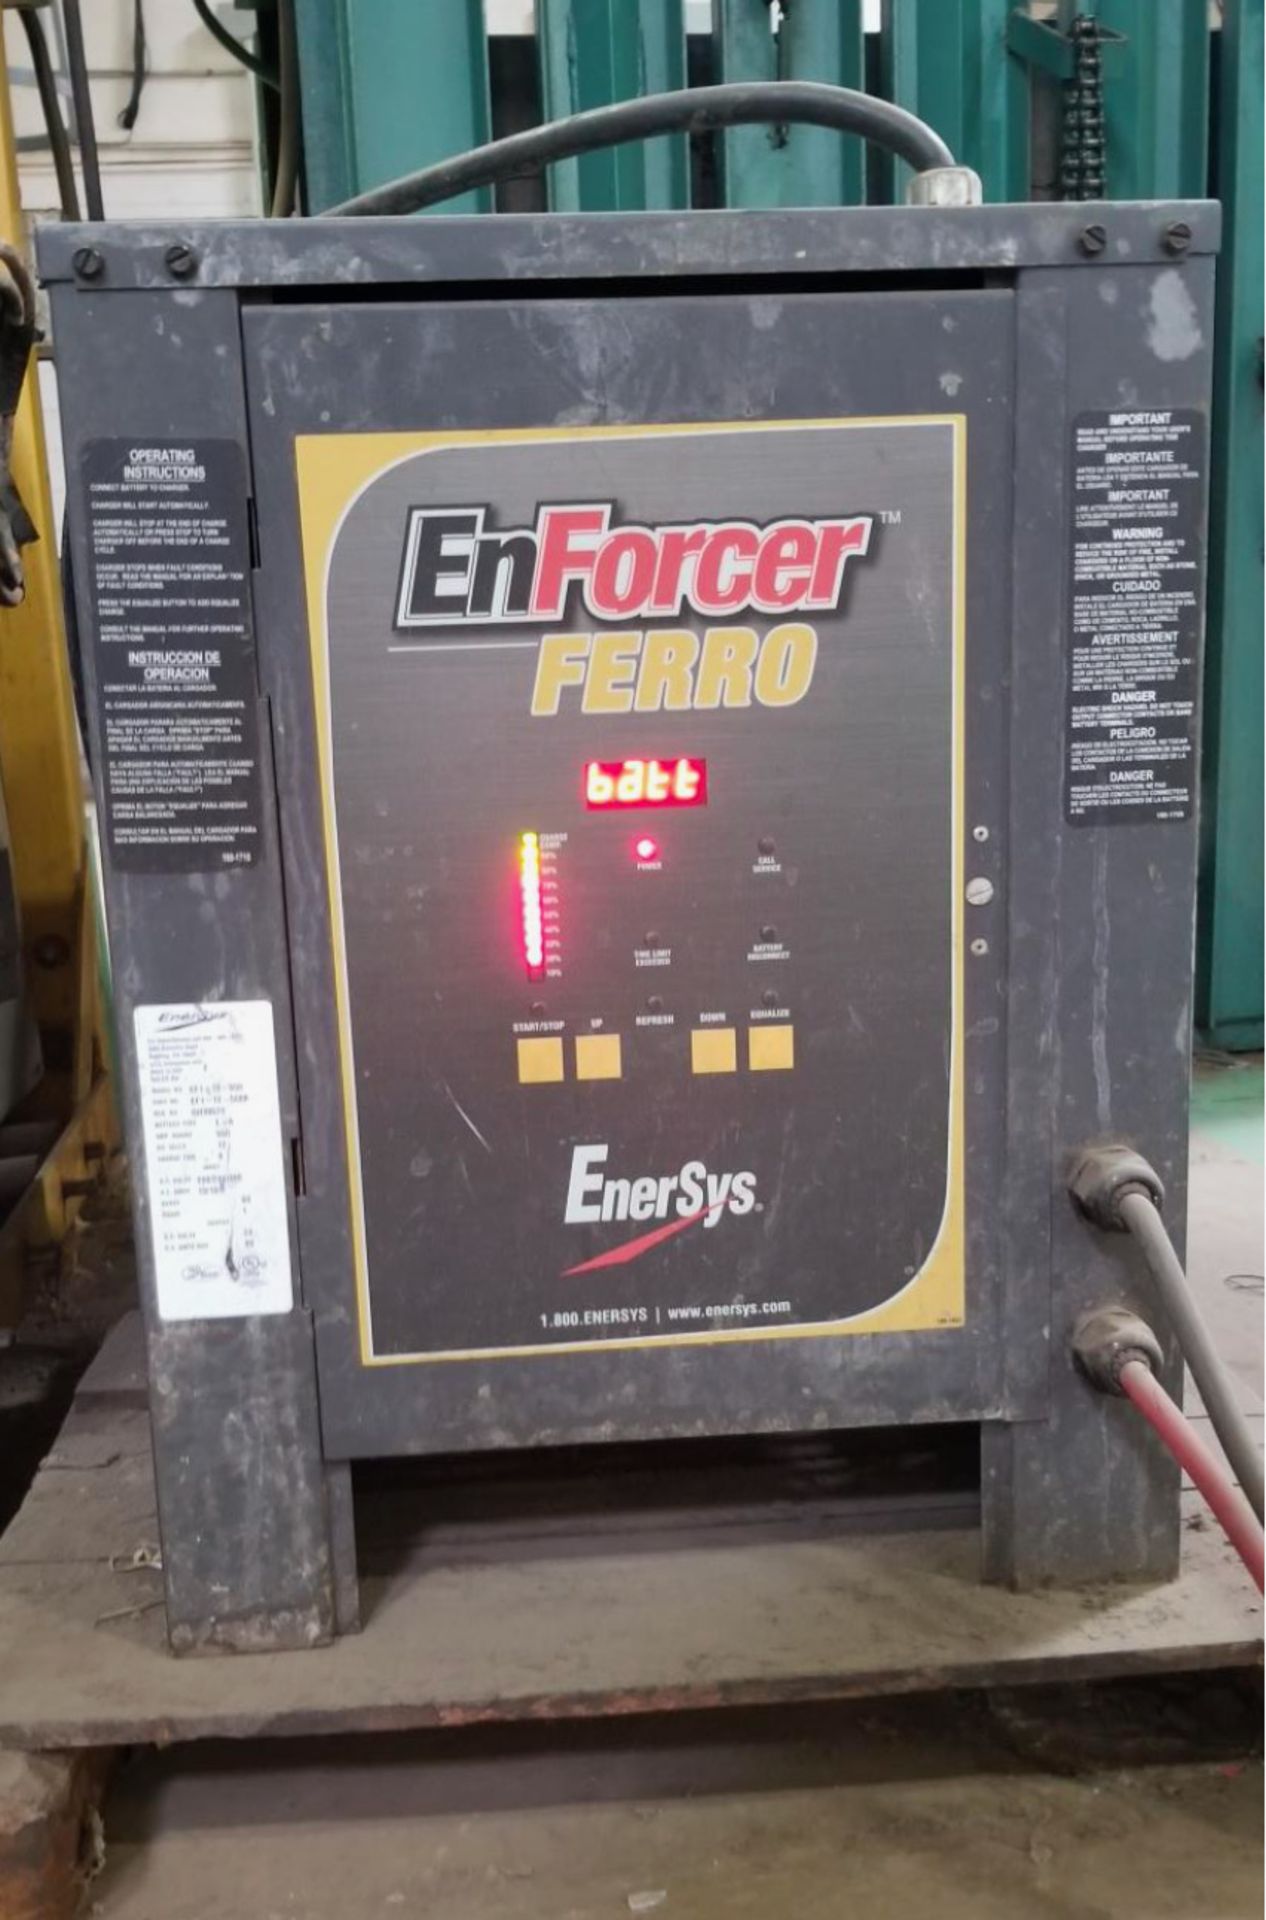 (4) Enersys Enforcer Ferro Forklift Battery Chargers, 36V / 140 Amps Max, Models EF3-18-775 - Image 9 of 10